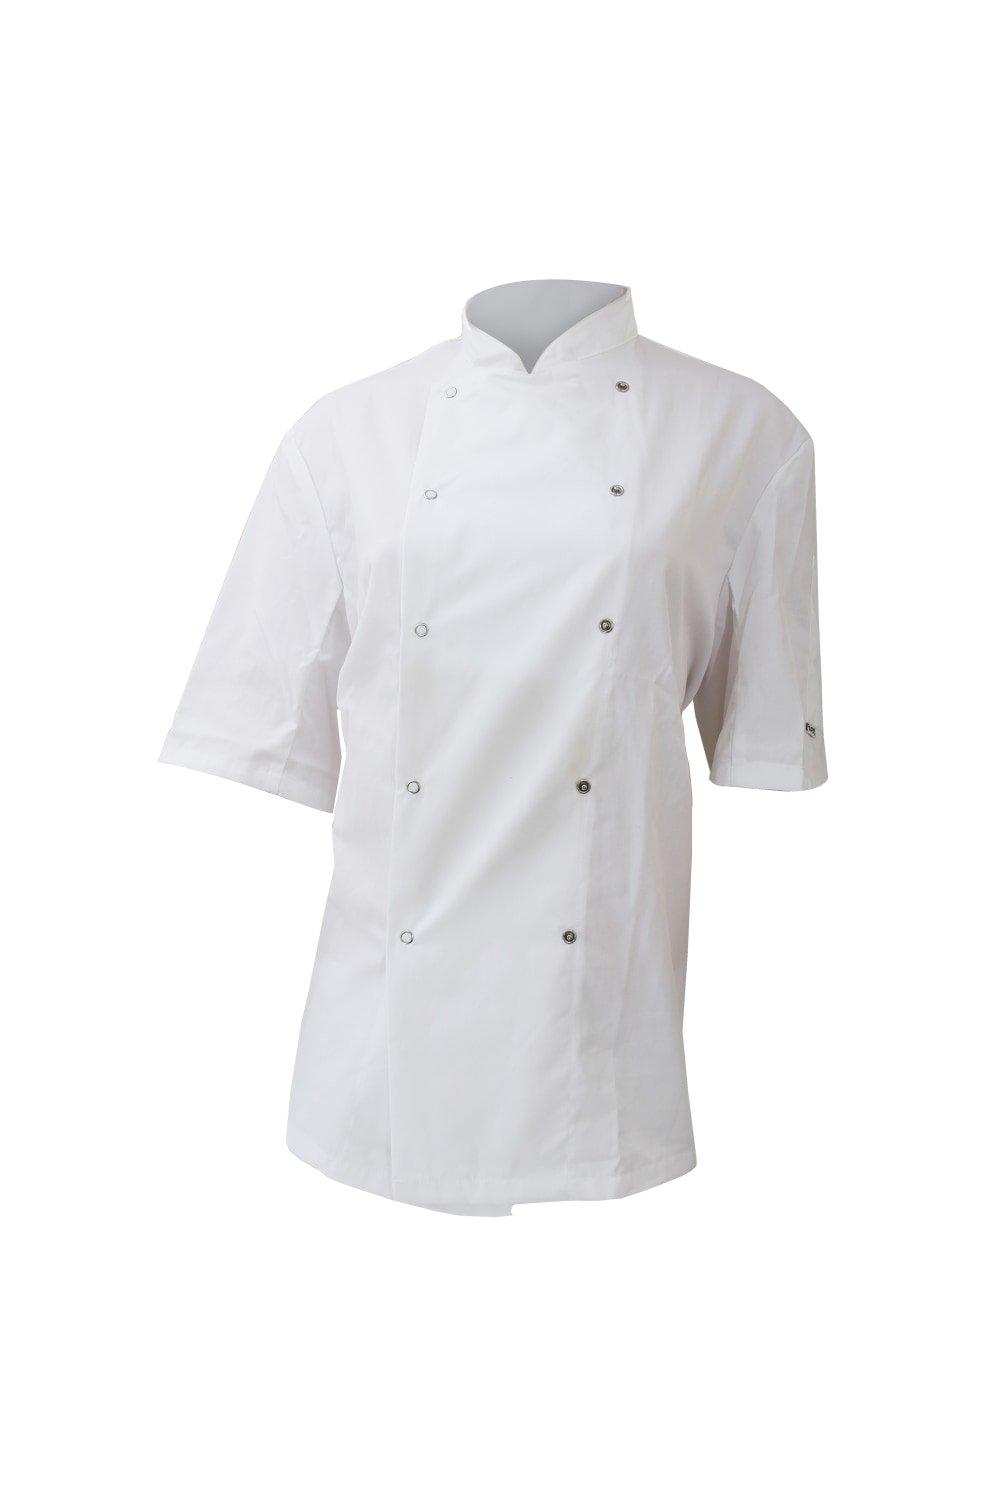 AFD Chefs Jacket Chefswear